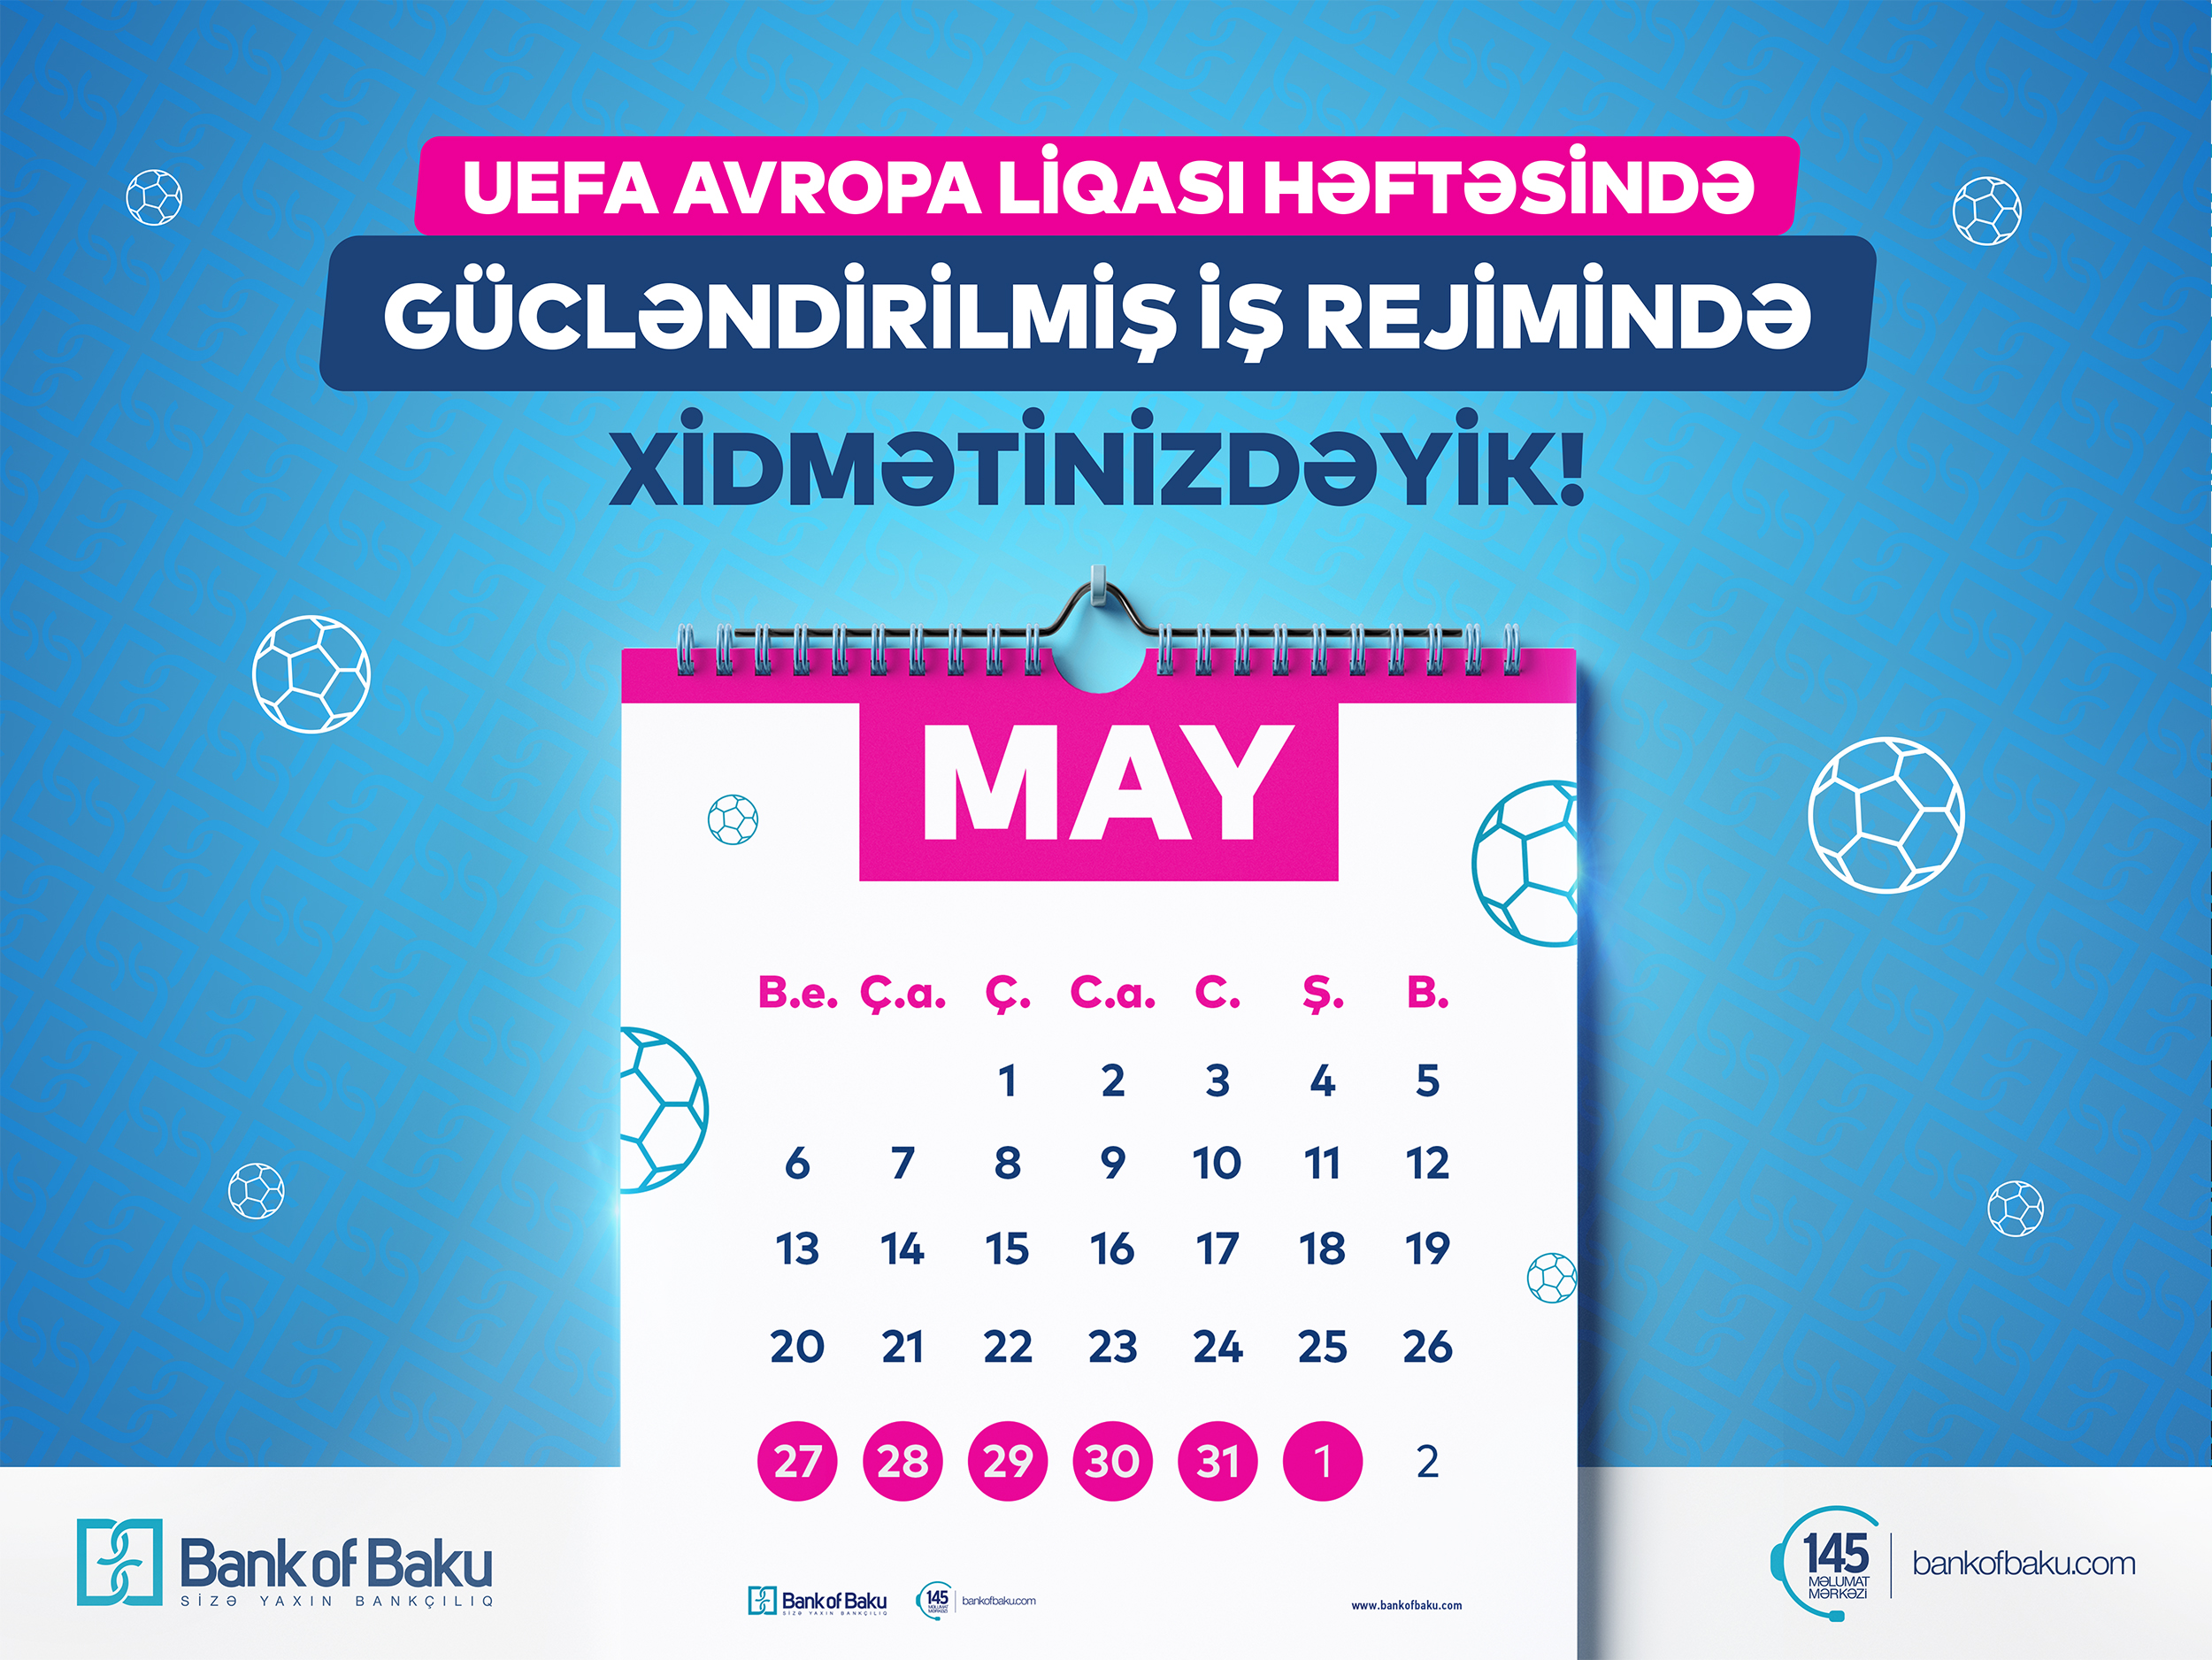 UEFA Avropa Liqası həftəsində Bank of Baku gücləndirilmiş iş rejiminə keçdi!